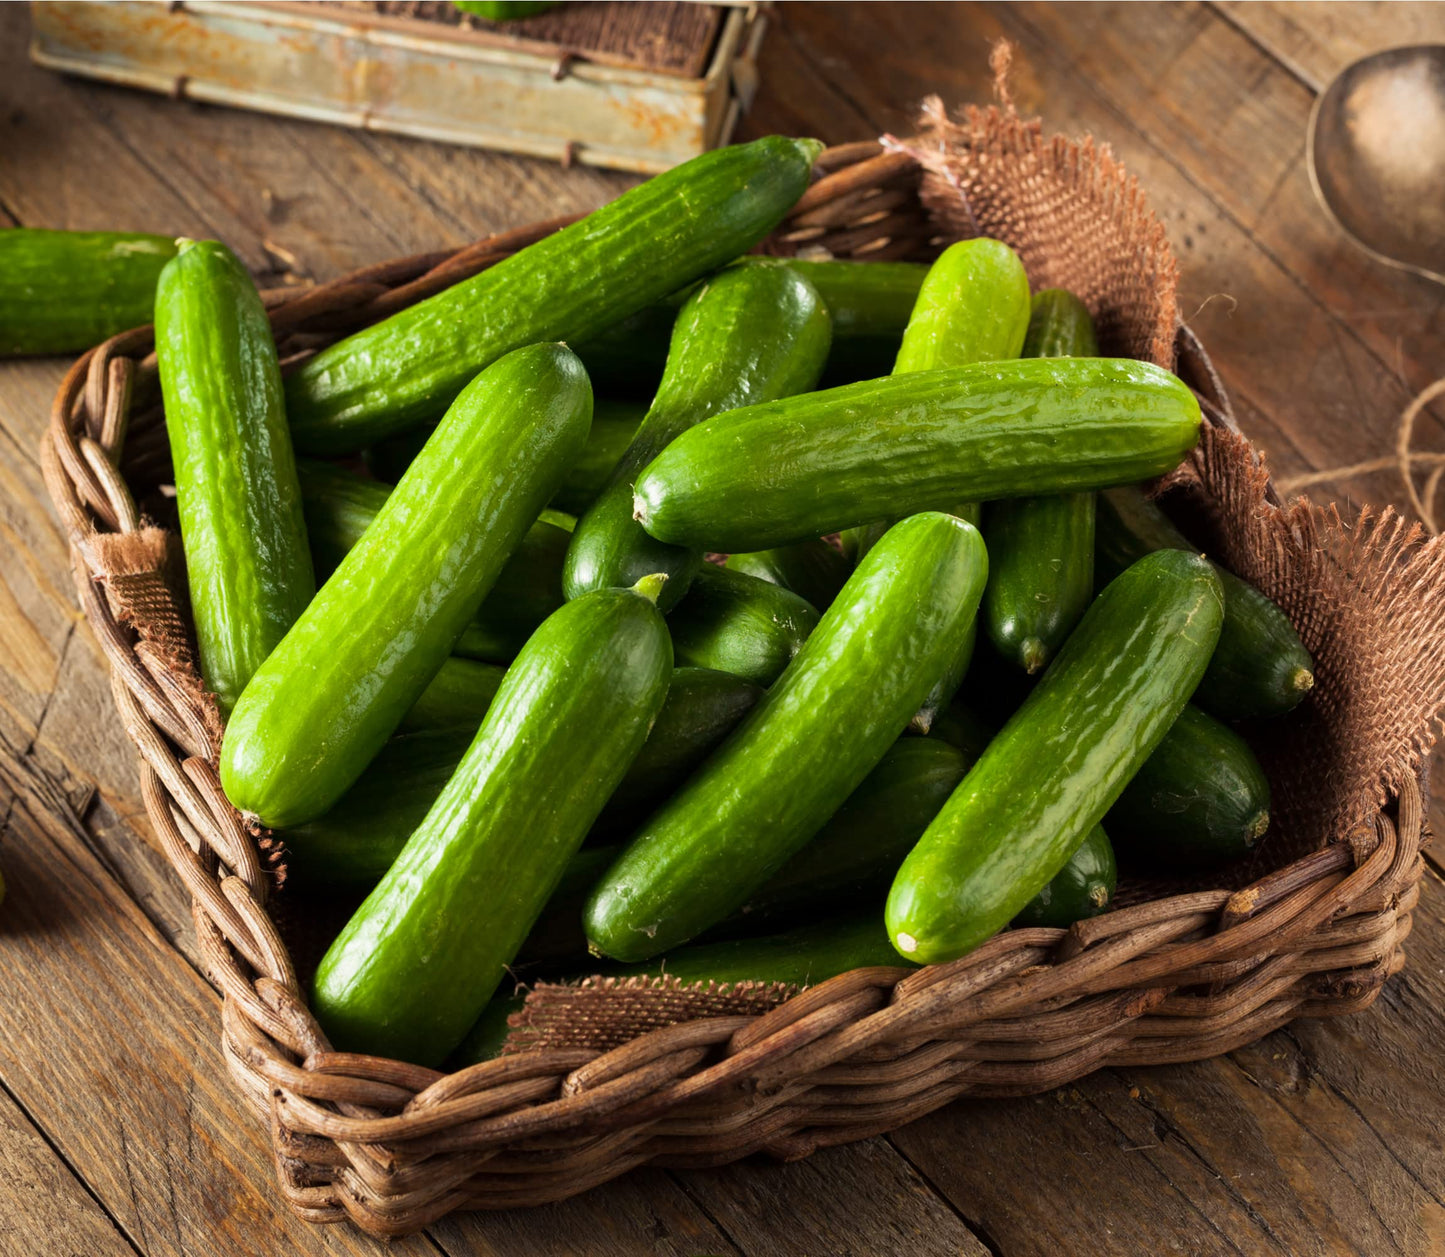 Vegetable Plants - Cucumber 'Femspot' - 3 x Large Plants in 9cm Pots